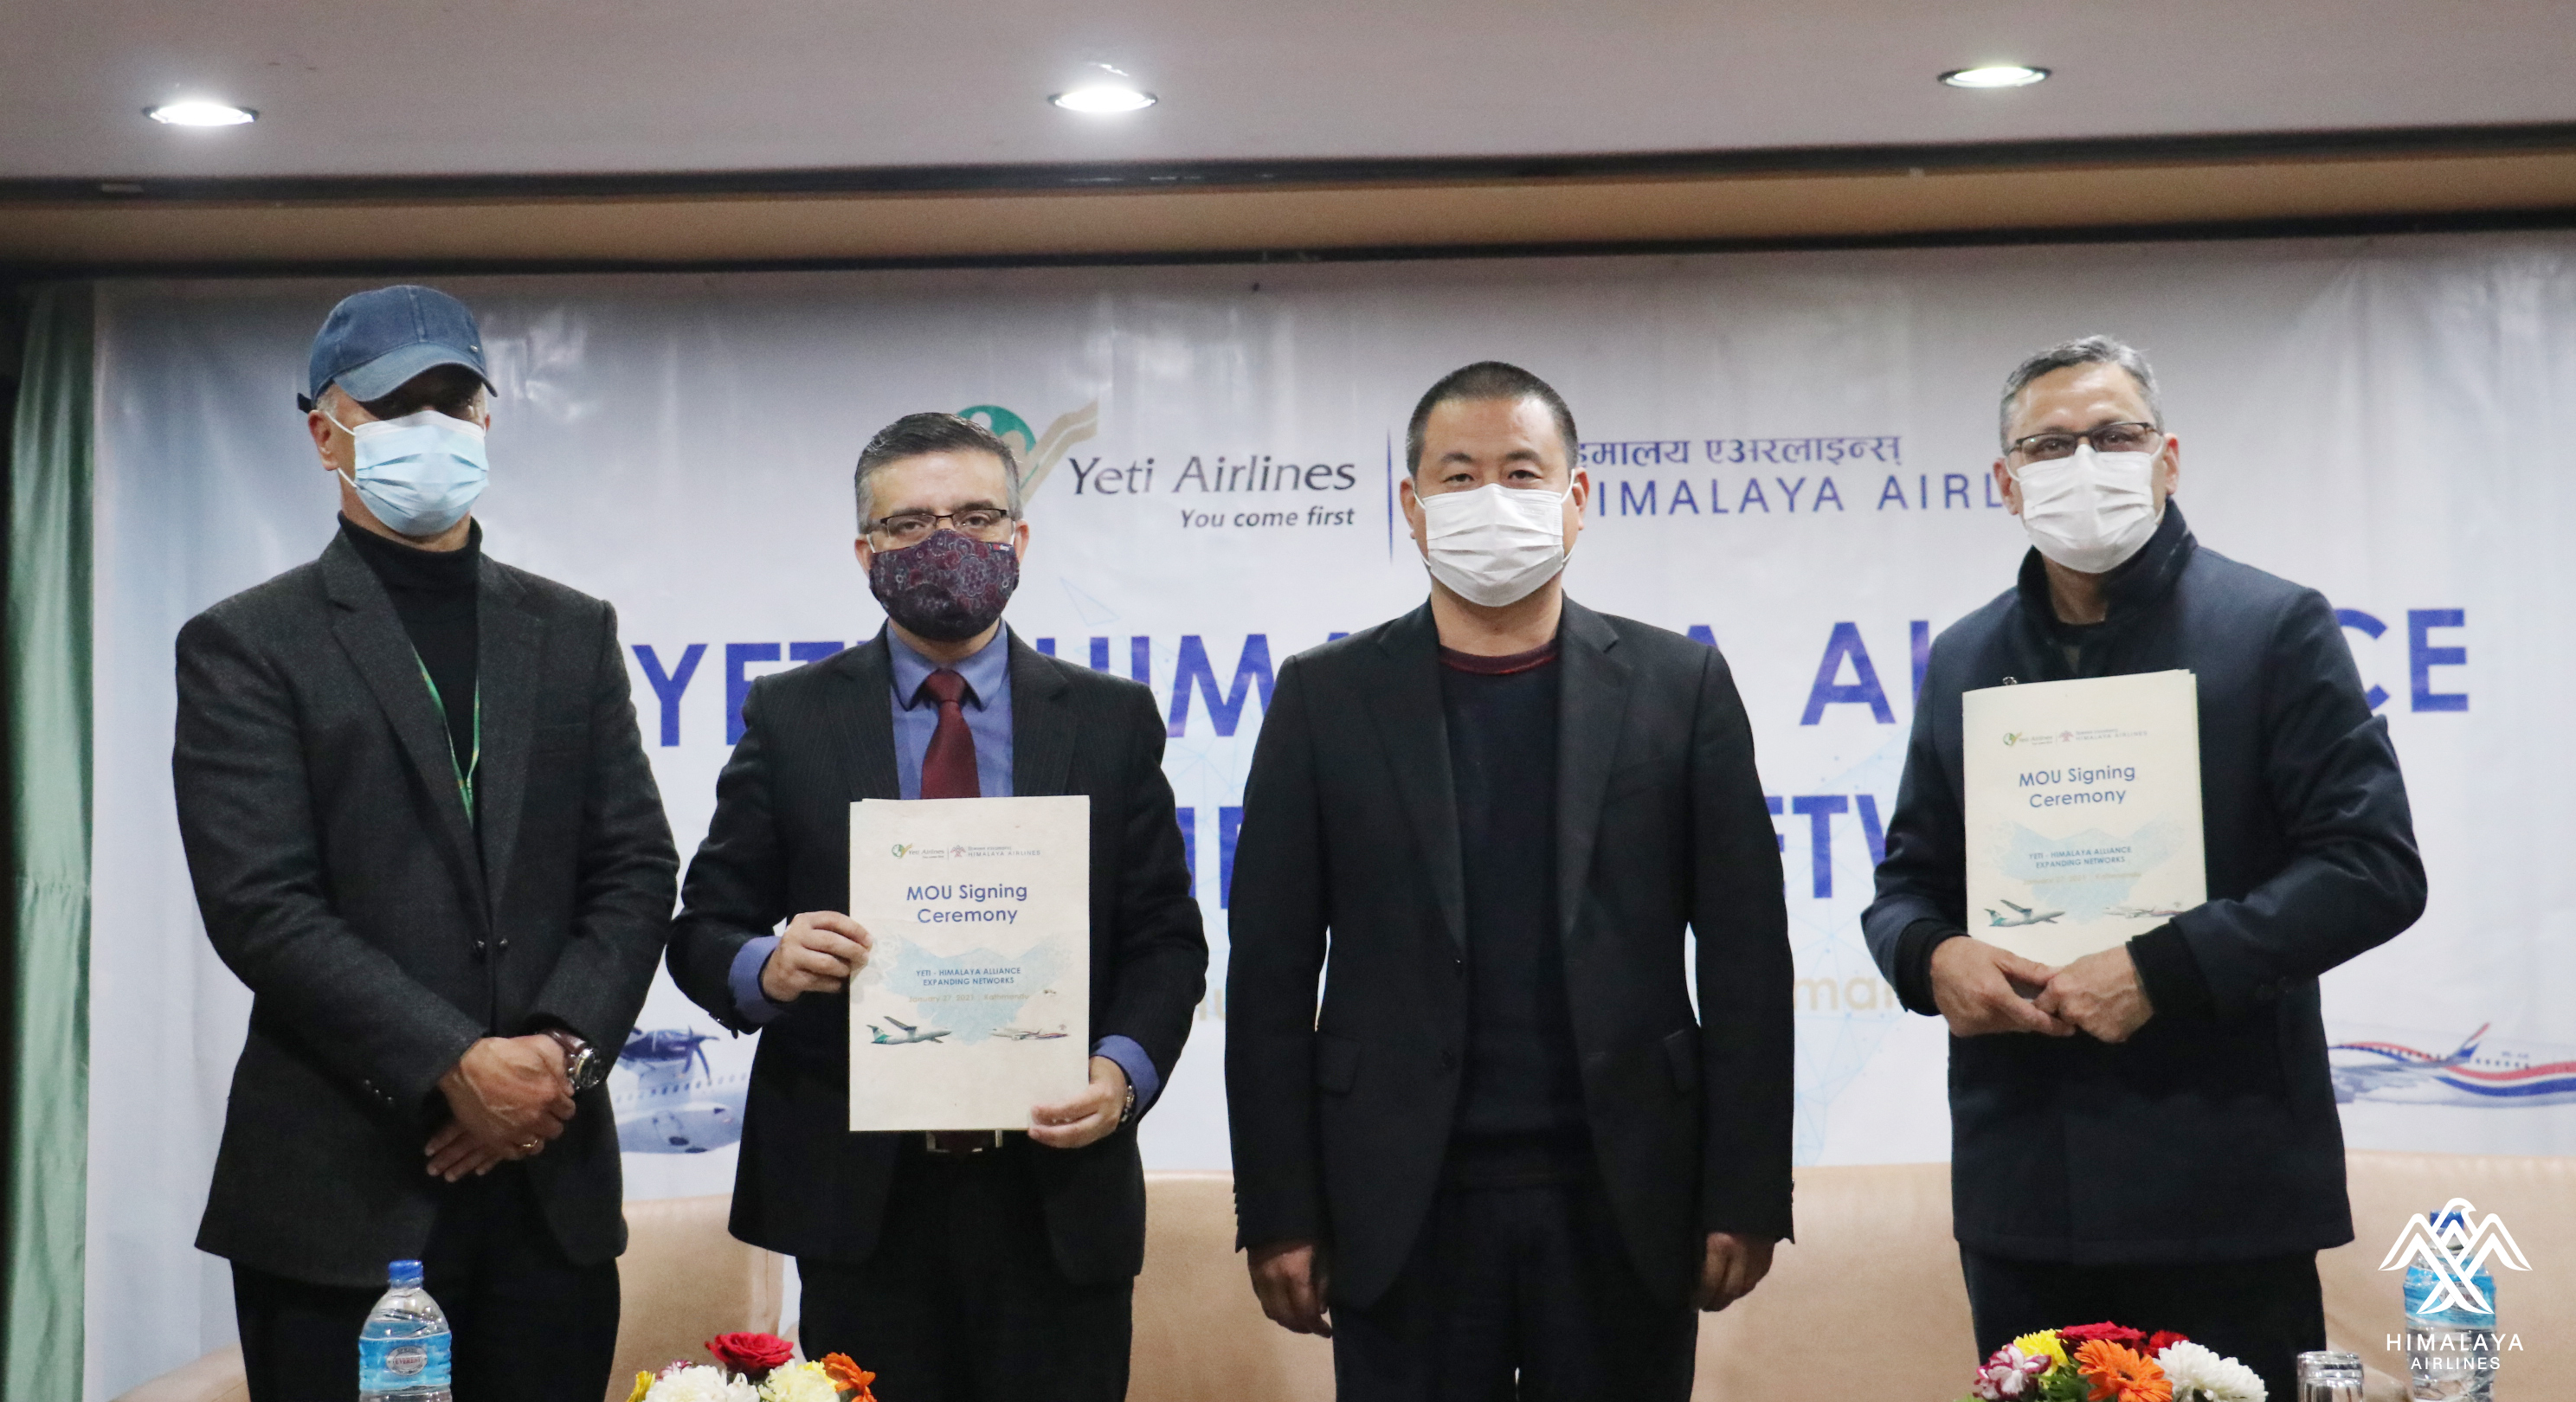 हिमालय एयरलाइन्स र यती एयरलाइन्सबीच व्यवसायिक सहकार्य